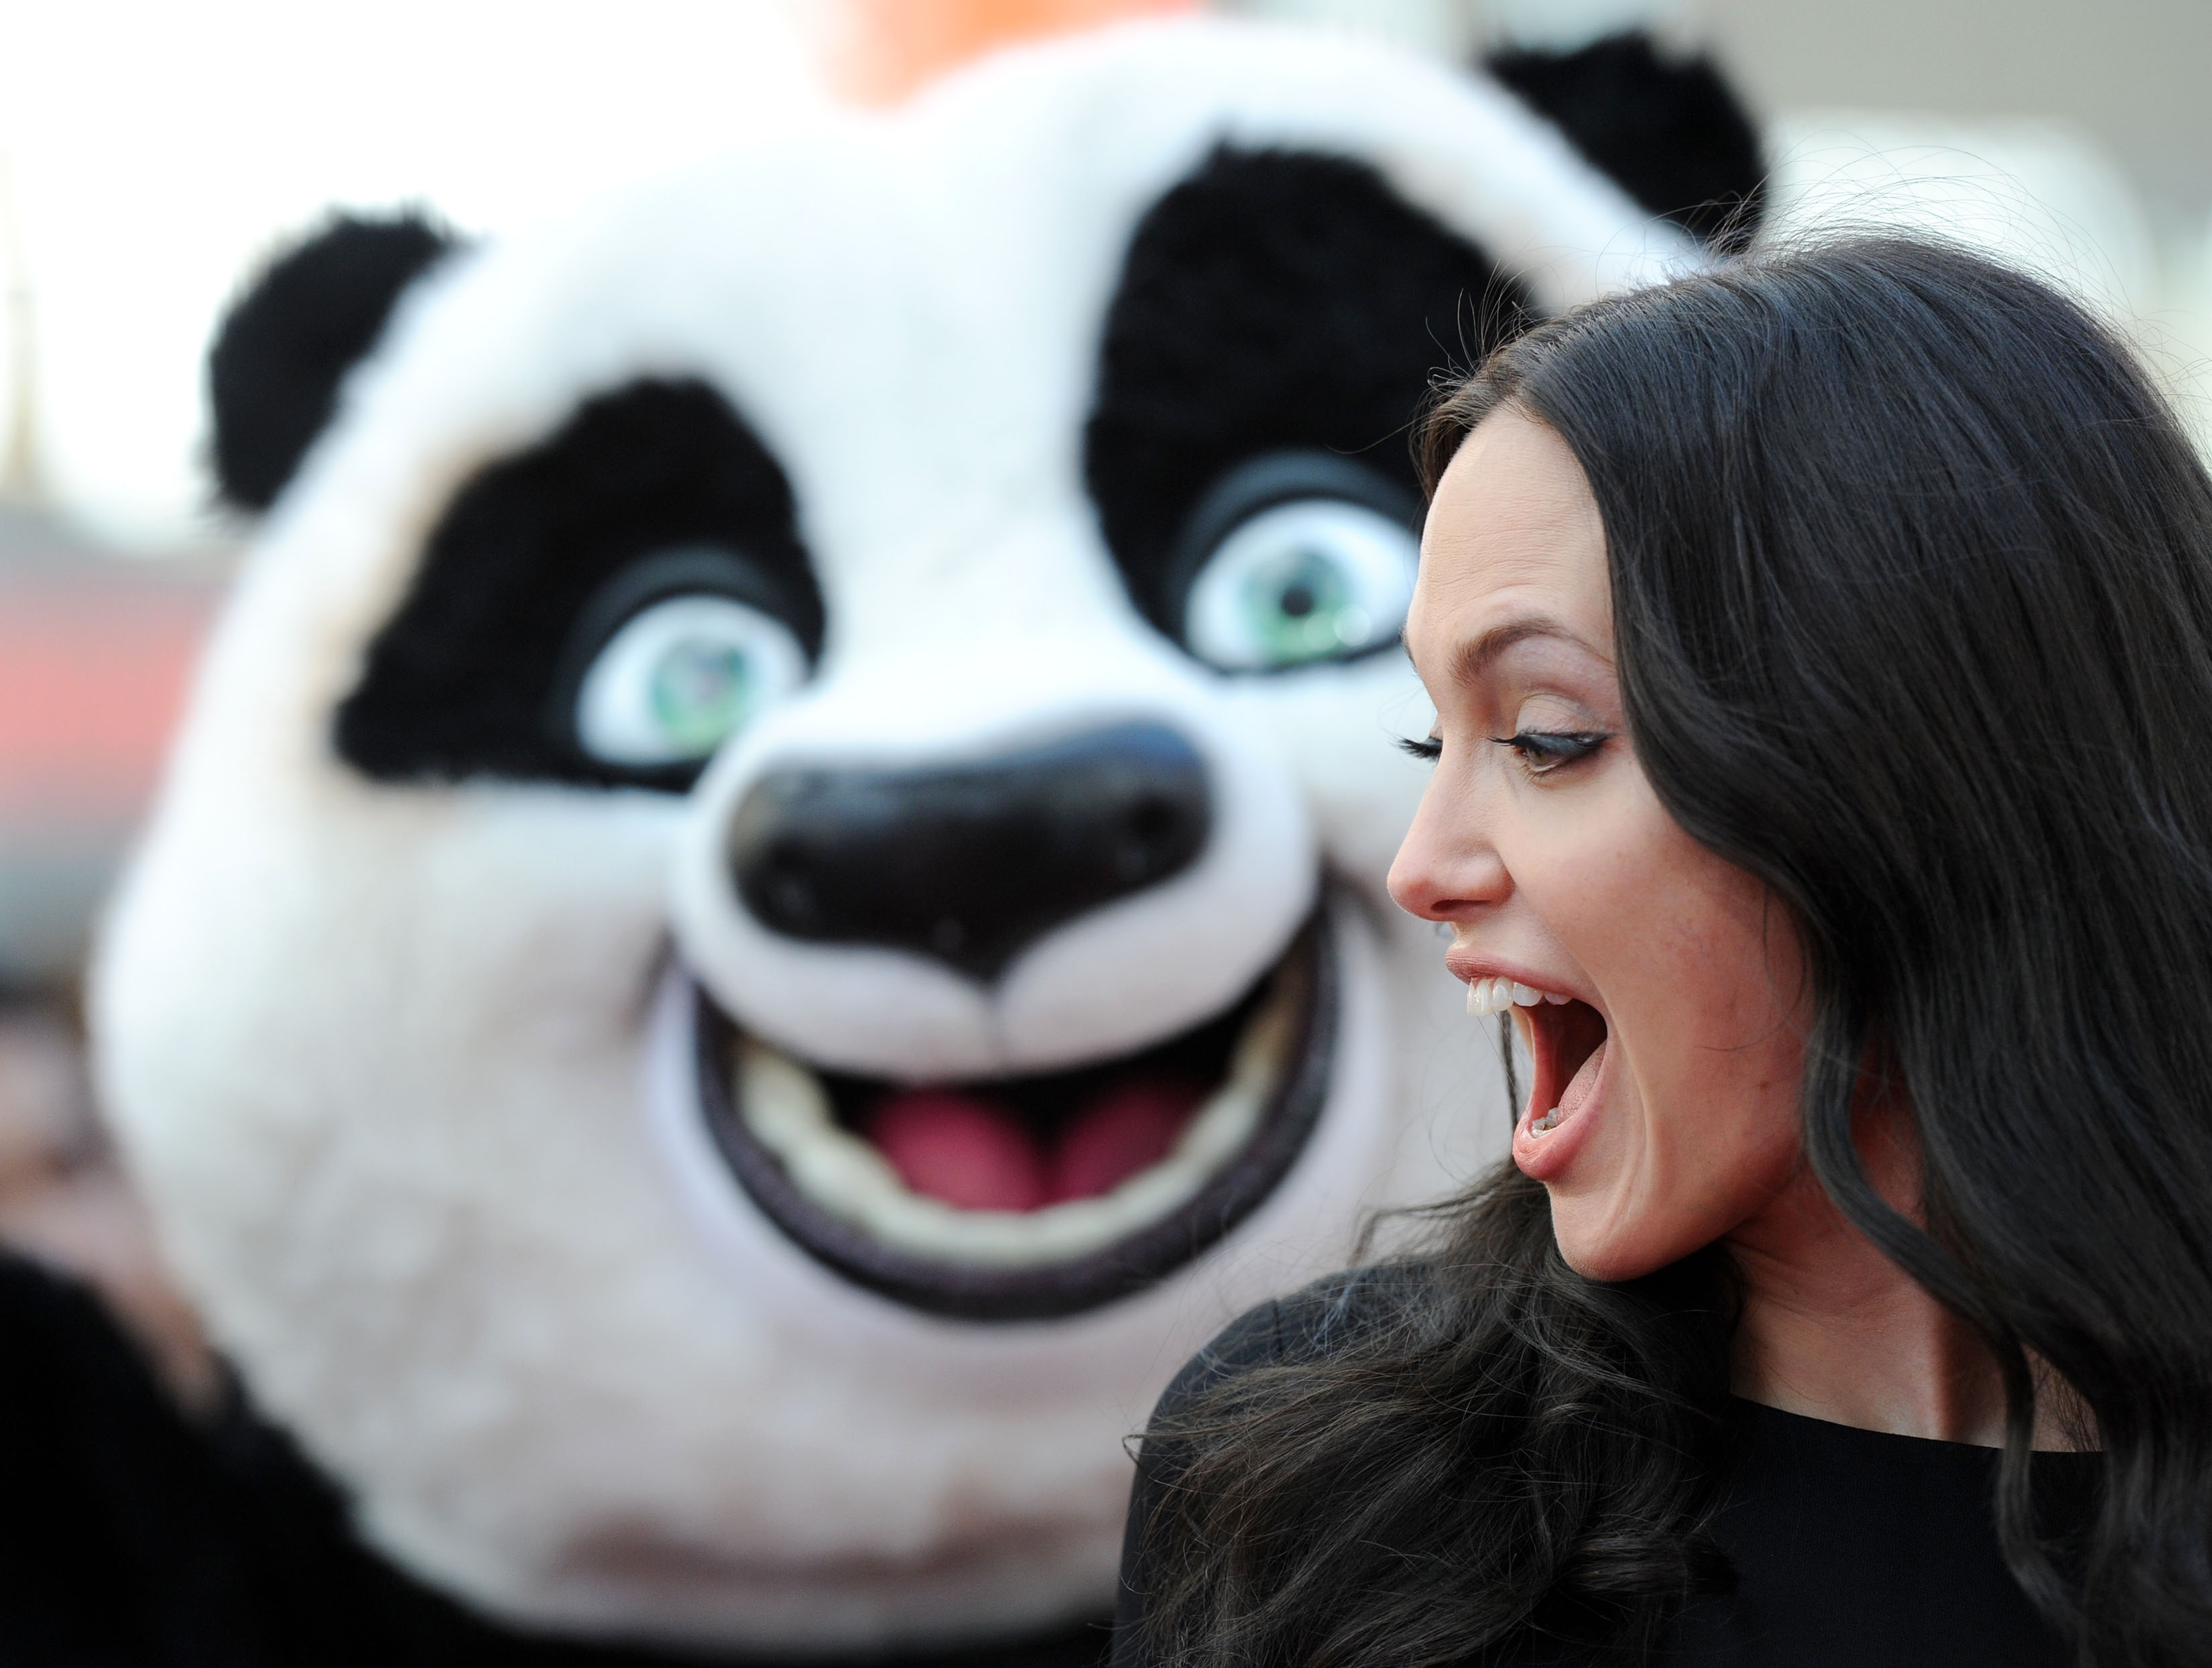 Анджелина Джоли кунфу Панда. Кунг фу Панда Джоли. Анджелина Джоли премьера кунг фу Панда. Анджелина Джоли беременна кунг-фу Панда. Кто озвучивал панда 3